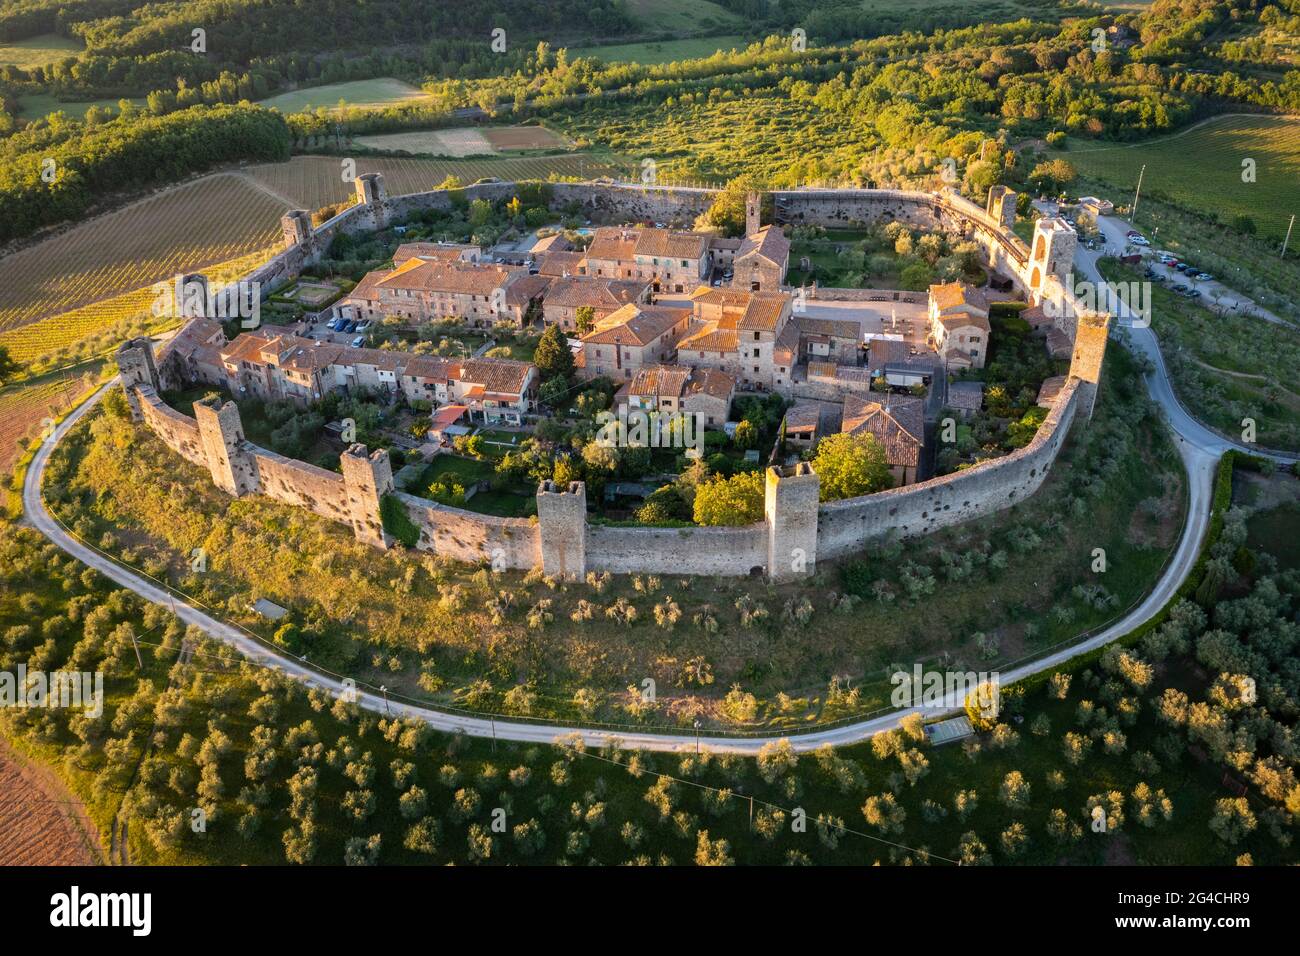 Vue aérienne de la ville médiévale de Monteriggioni au coucher du soleil. Monteriggioni, quartier de Sienne, Toscane, Italie. Banque D'Images